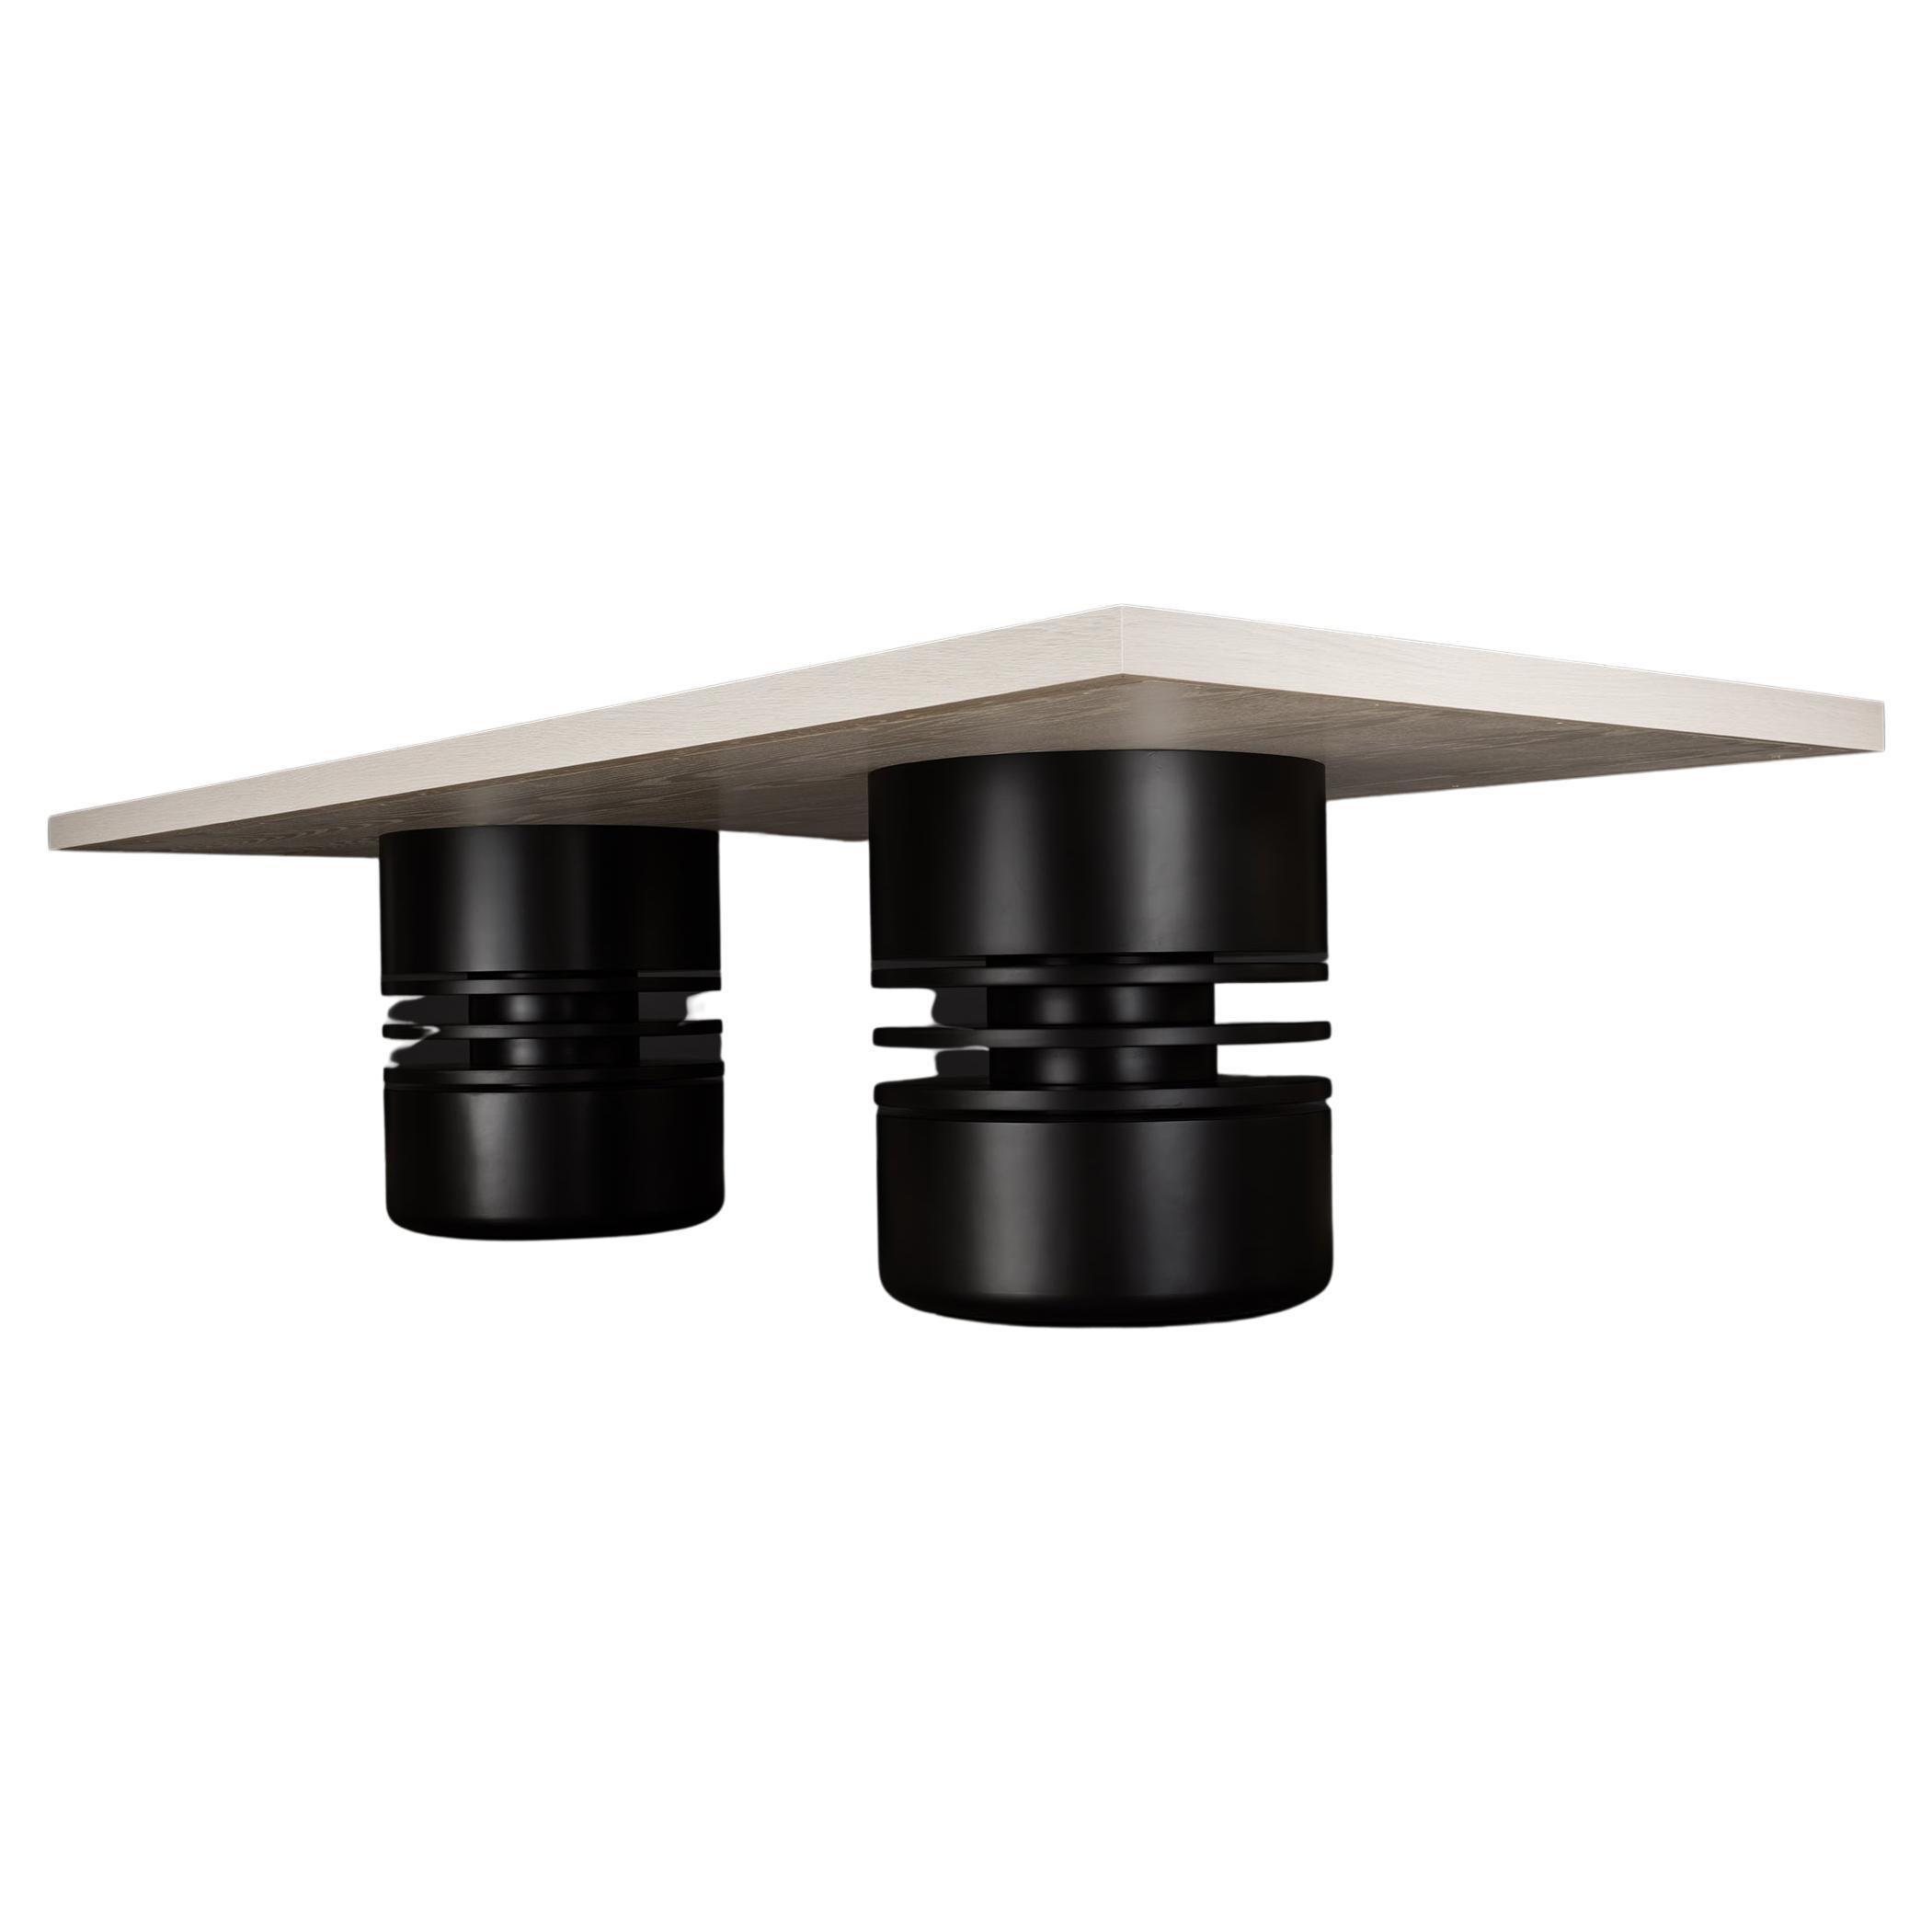 TABLE À MANGER BOLSA - Design moderne en chêne Rift du Pacifique avec laque noire mate  en vente